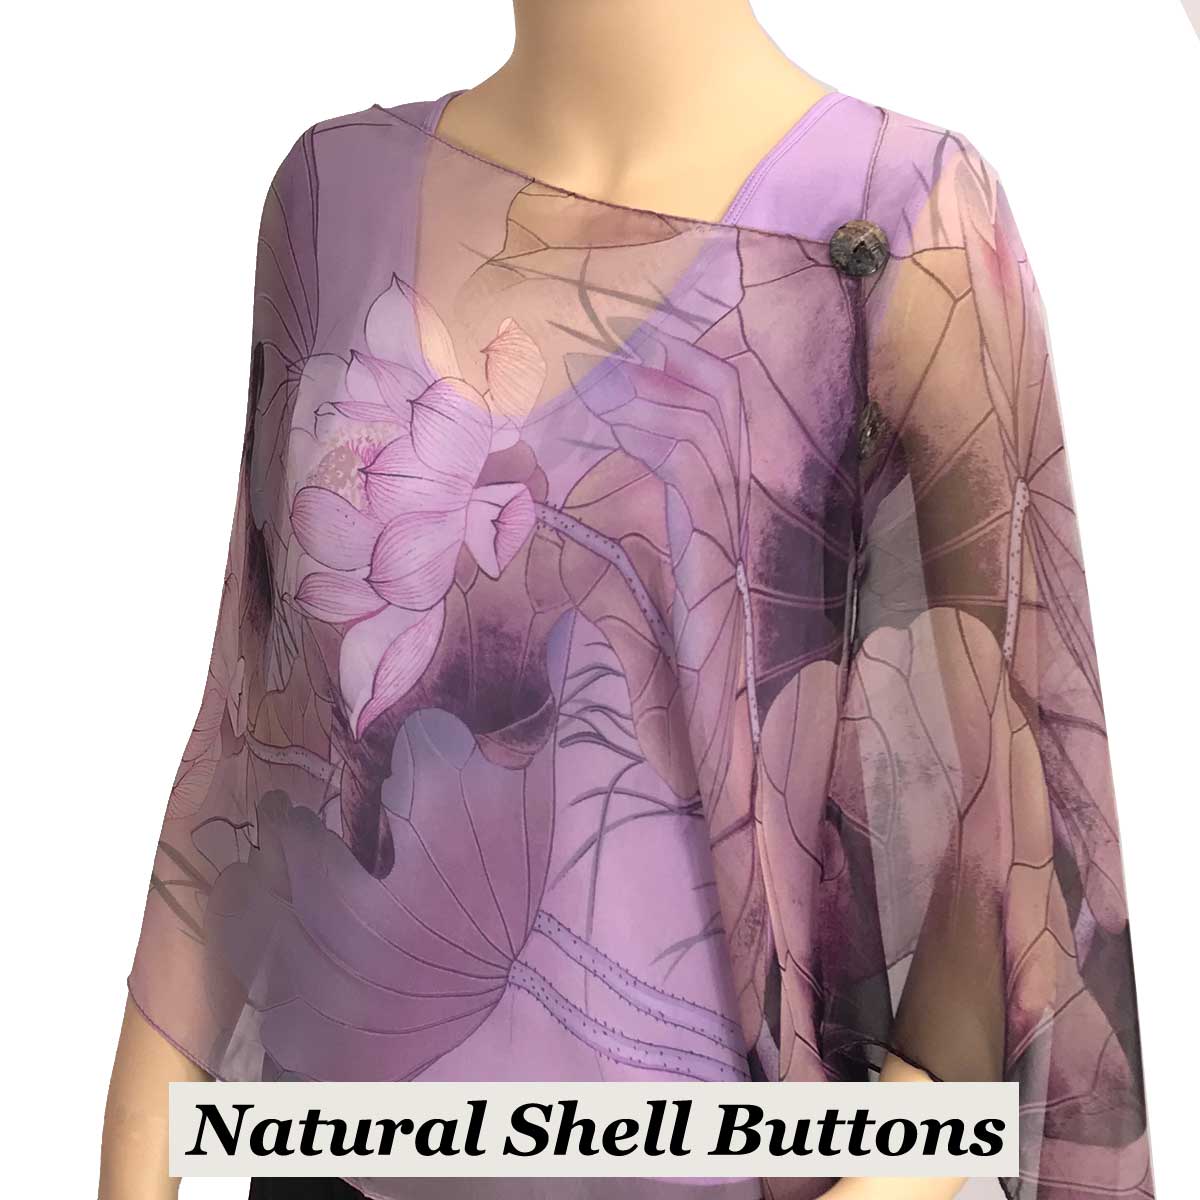 130PL - Shell Buttons<br>
Purple-Lavender (Lotus